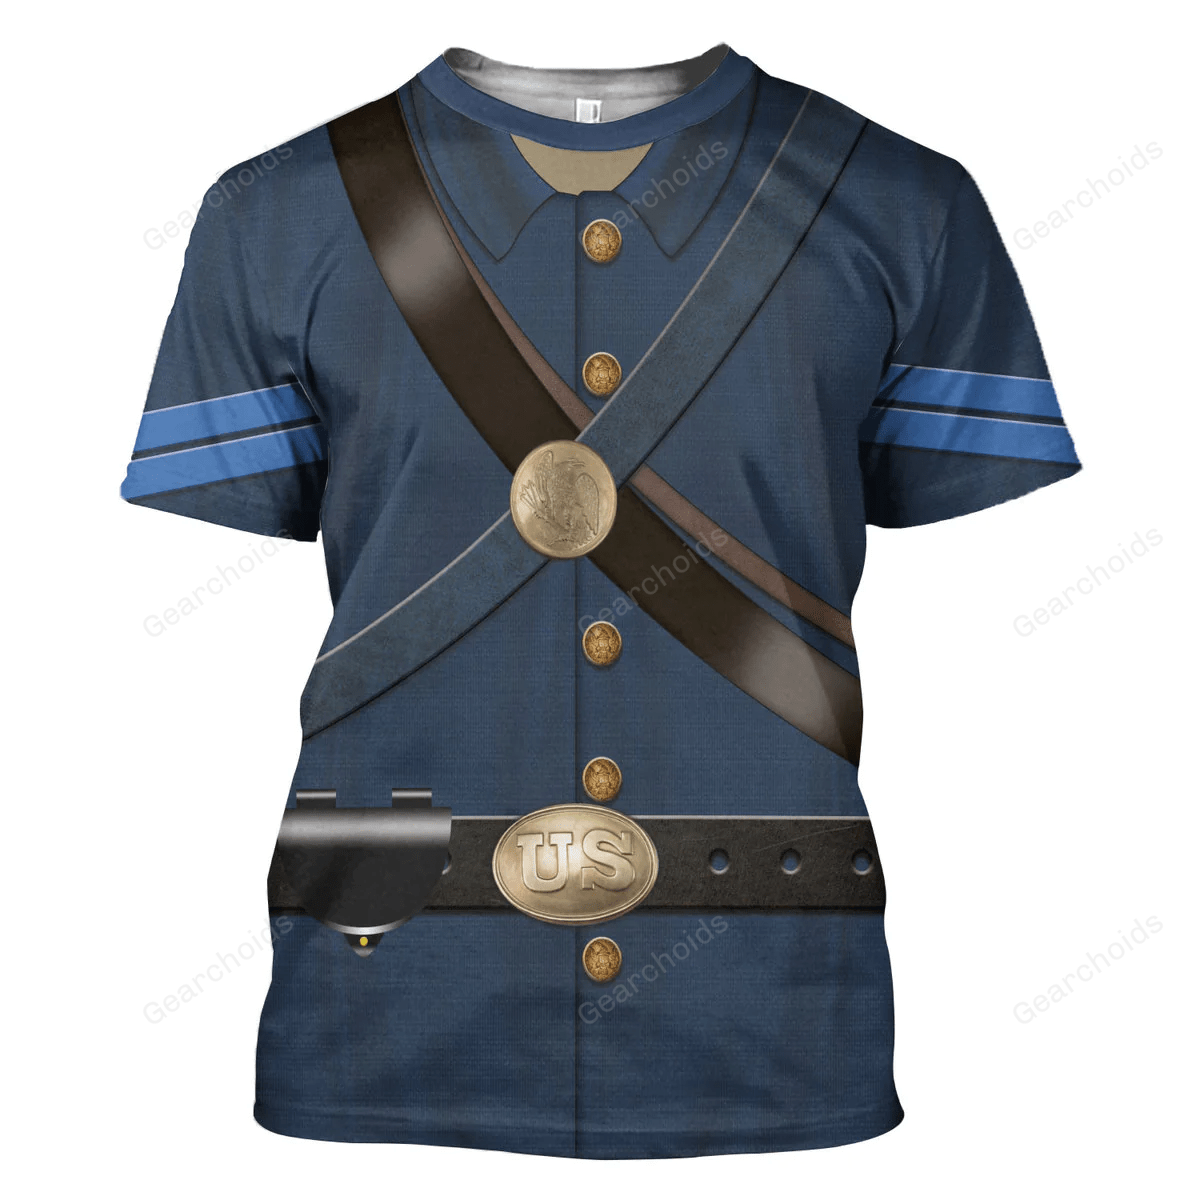 CW Uniforms Of Blue Uniform T-Shirt